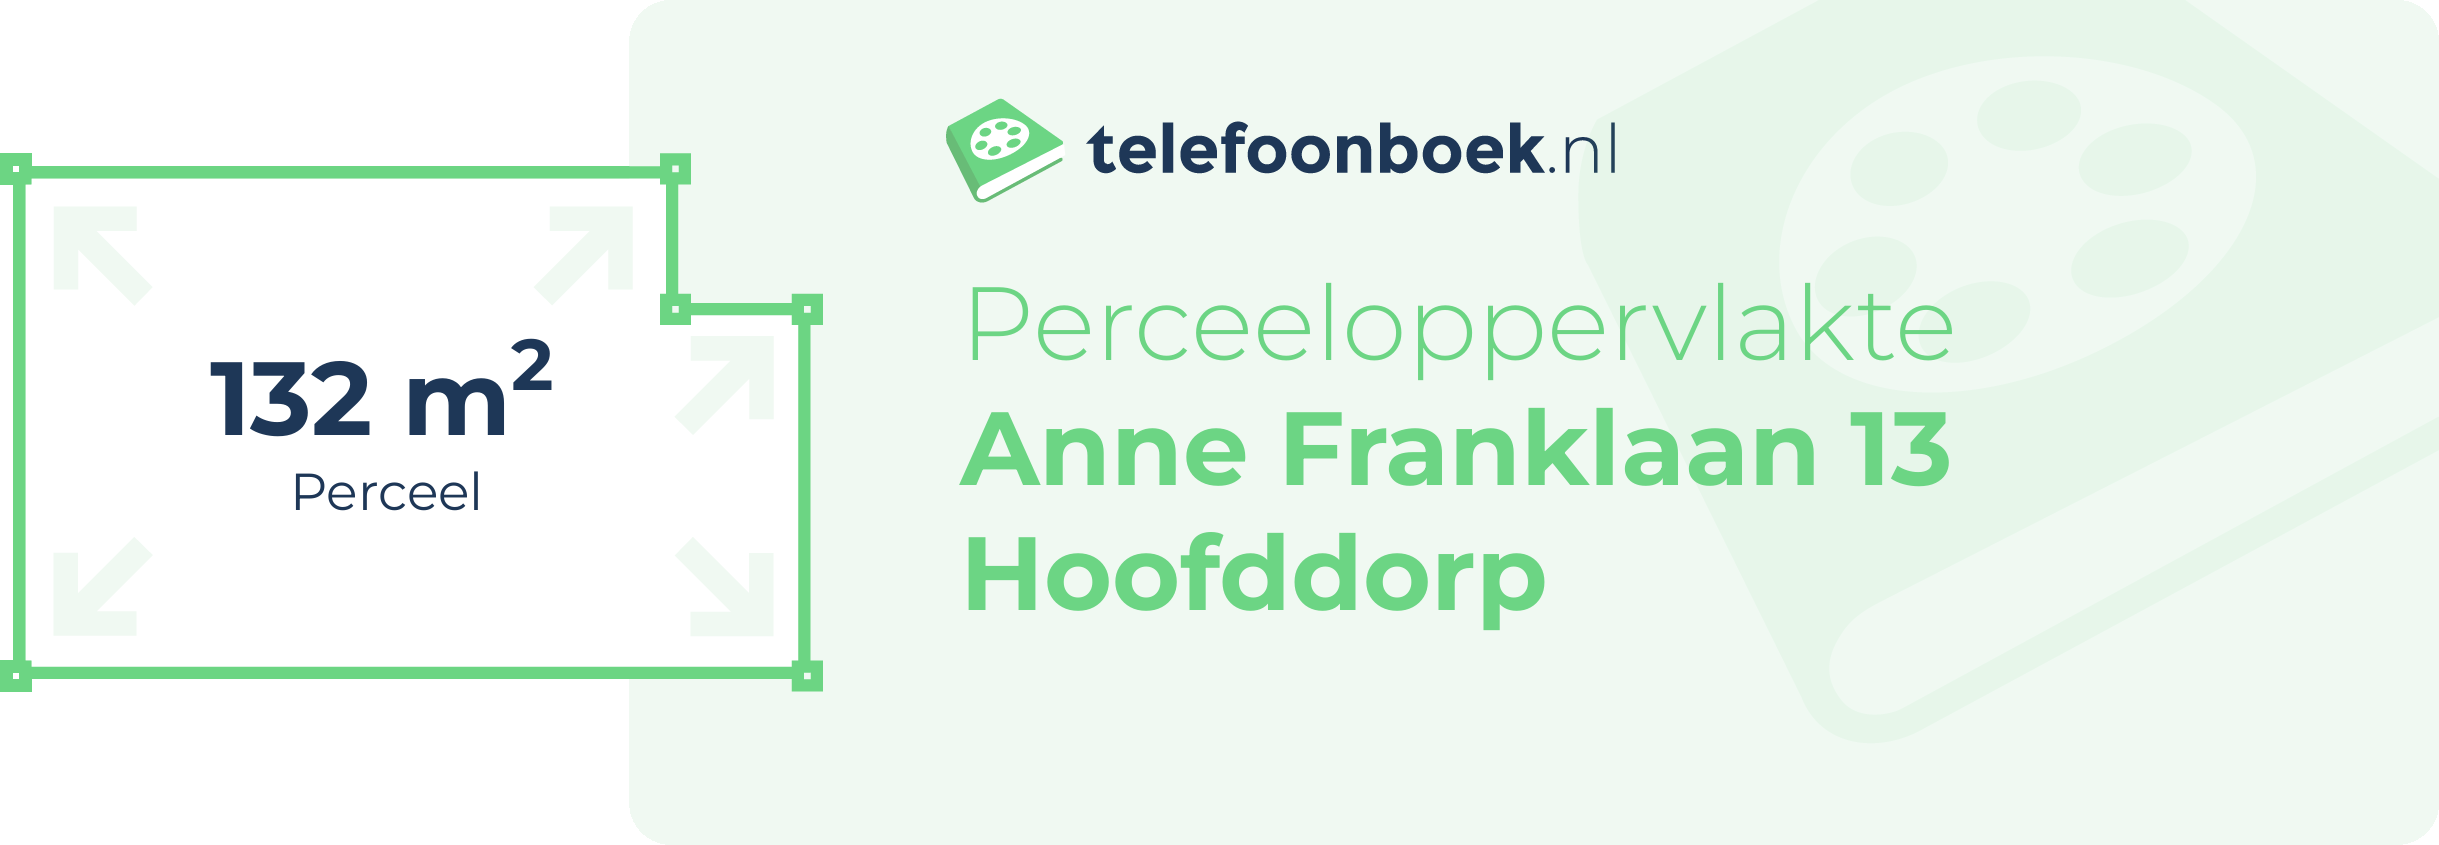 Perceeloppervlakte Anne Franklaan 13 Hoofddorp